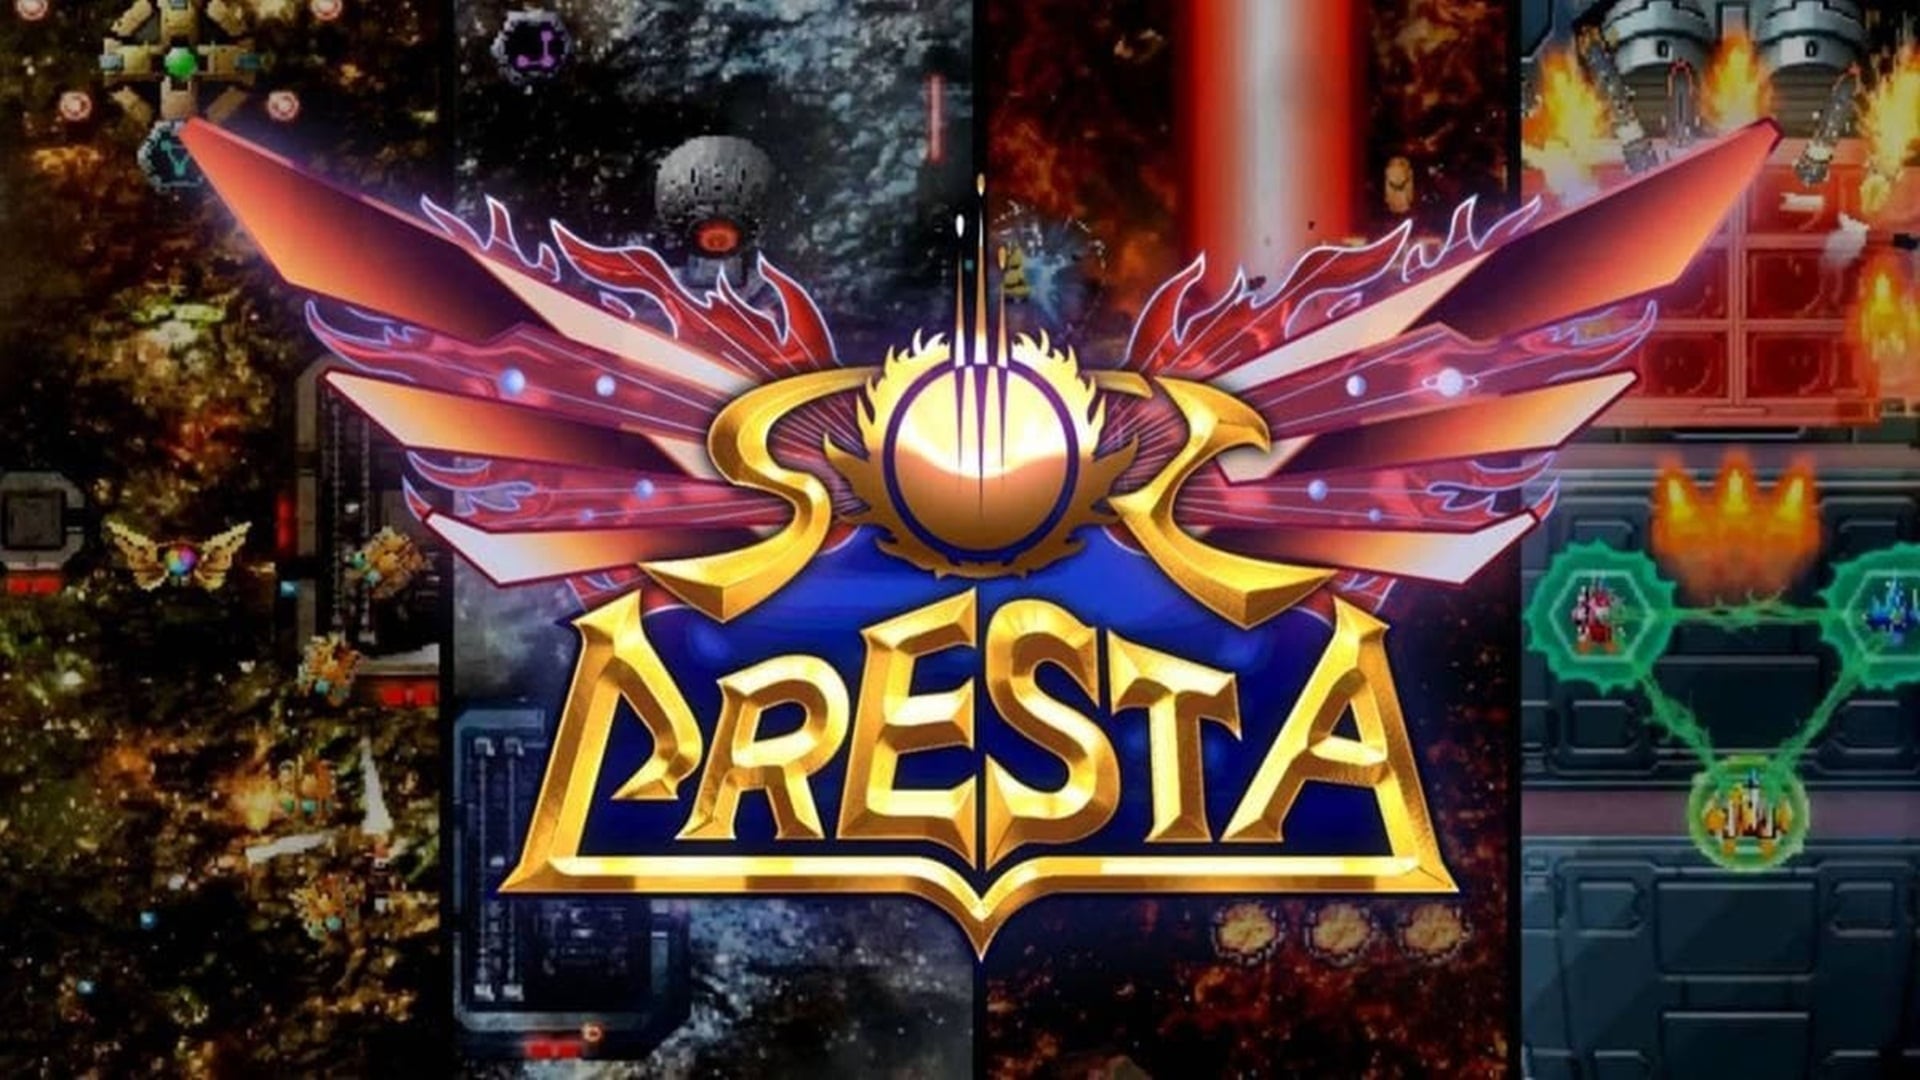 Sol Cresta obtendrá un lanzamiento físico de edición limitada, GamersRD